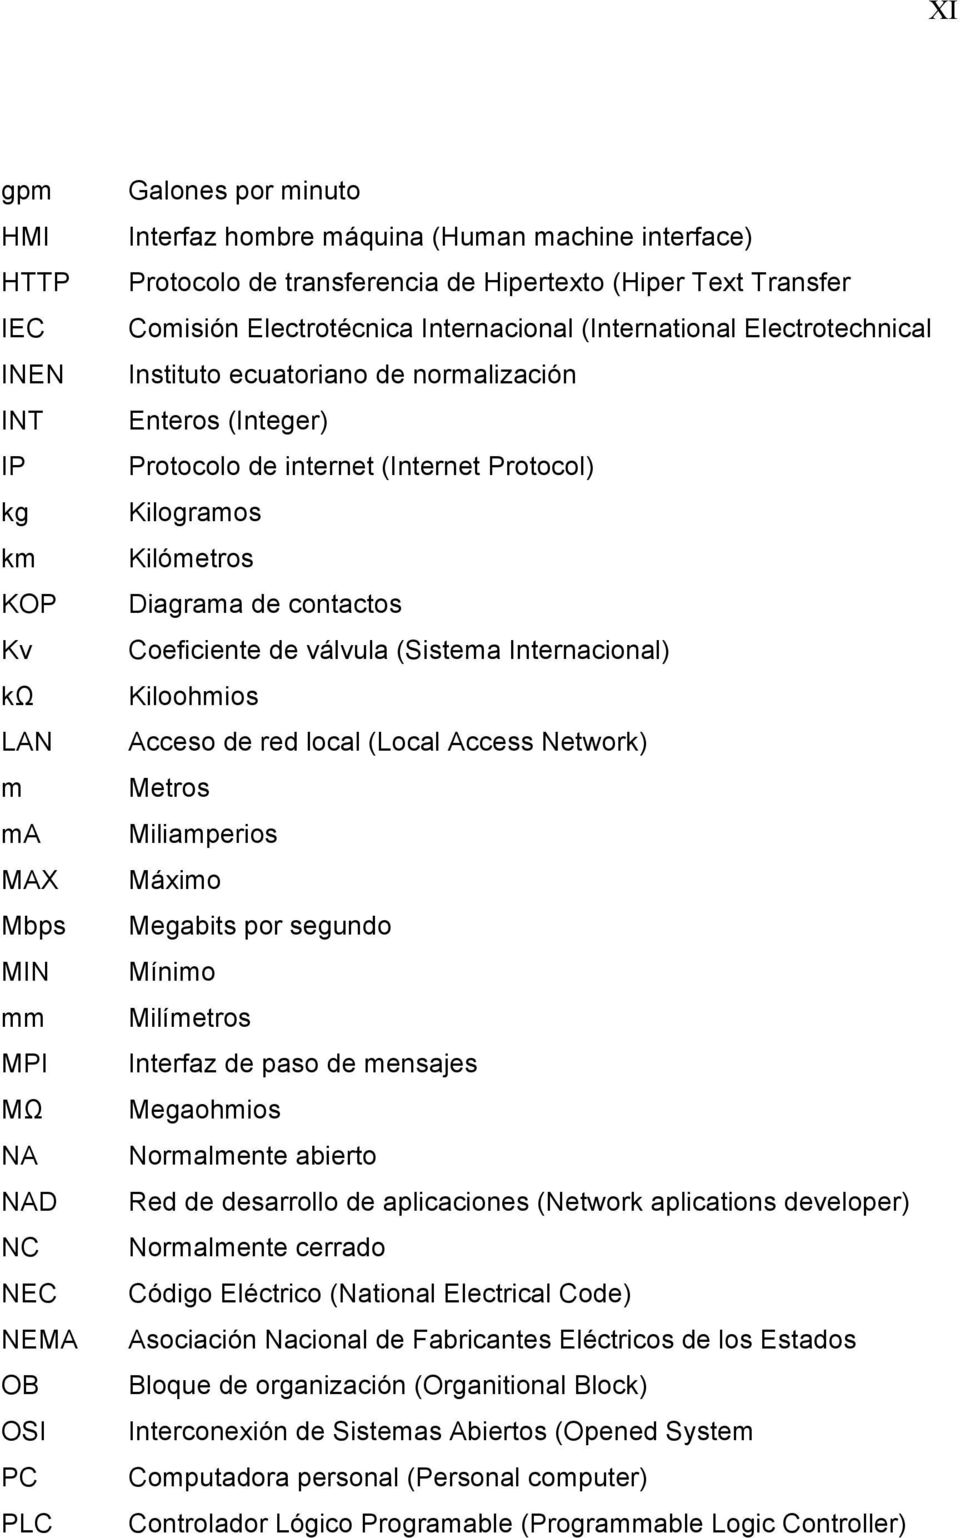 Protocolo de internet (Internet Protocol) Kilogramos Kilómetros Diagrama de contactos Coeficiente de válvula (Sistema Internacional) Kiloohmios Acceso de red local (Local Access Network) Metros